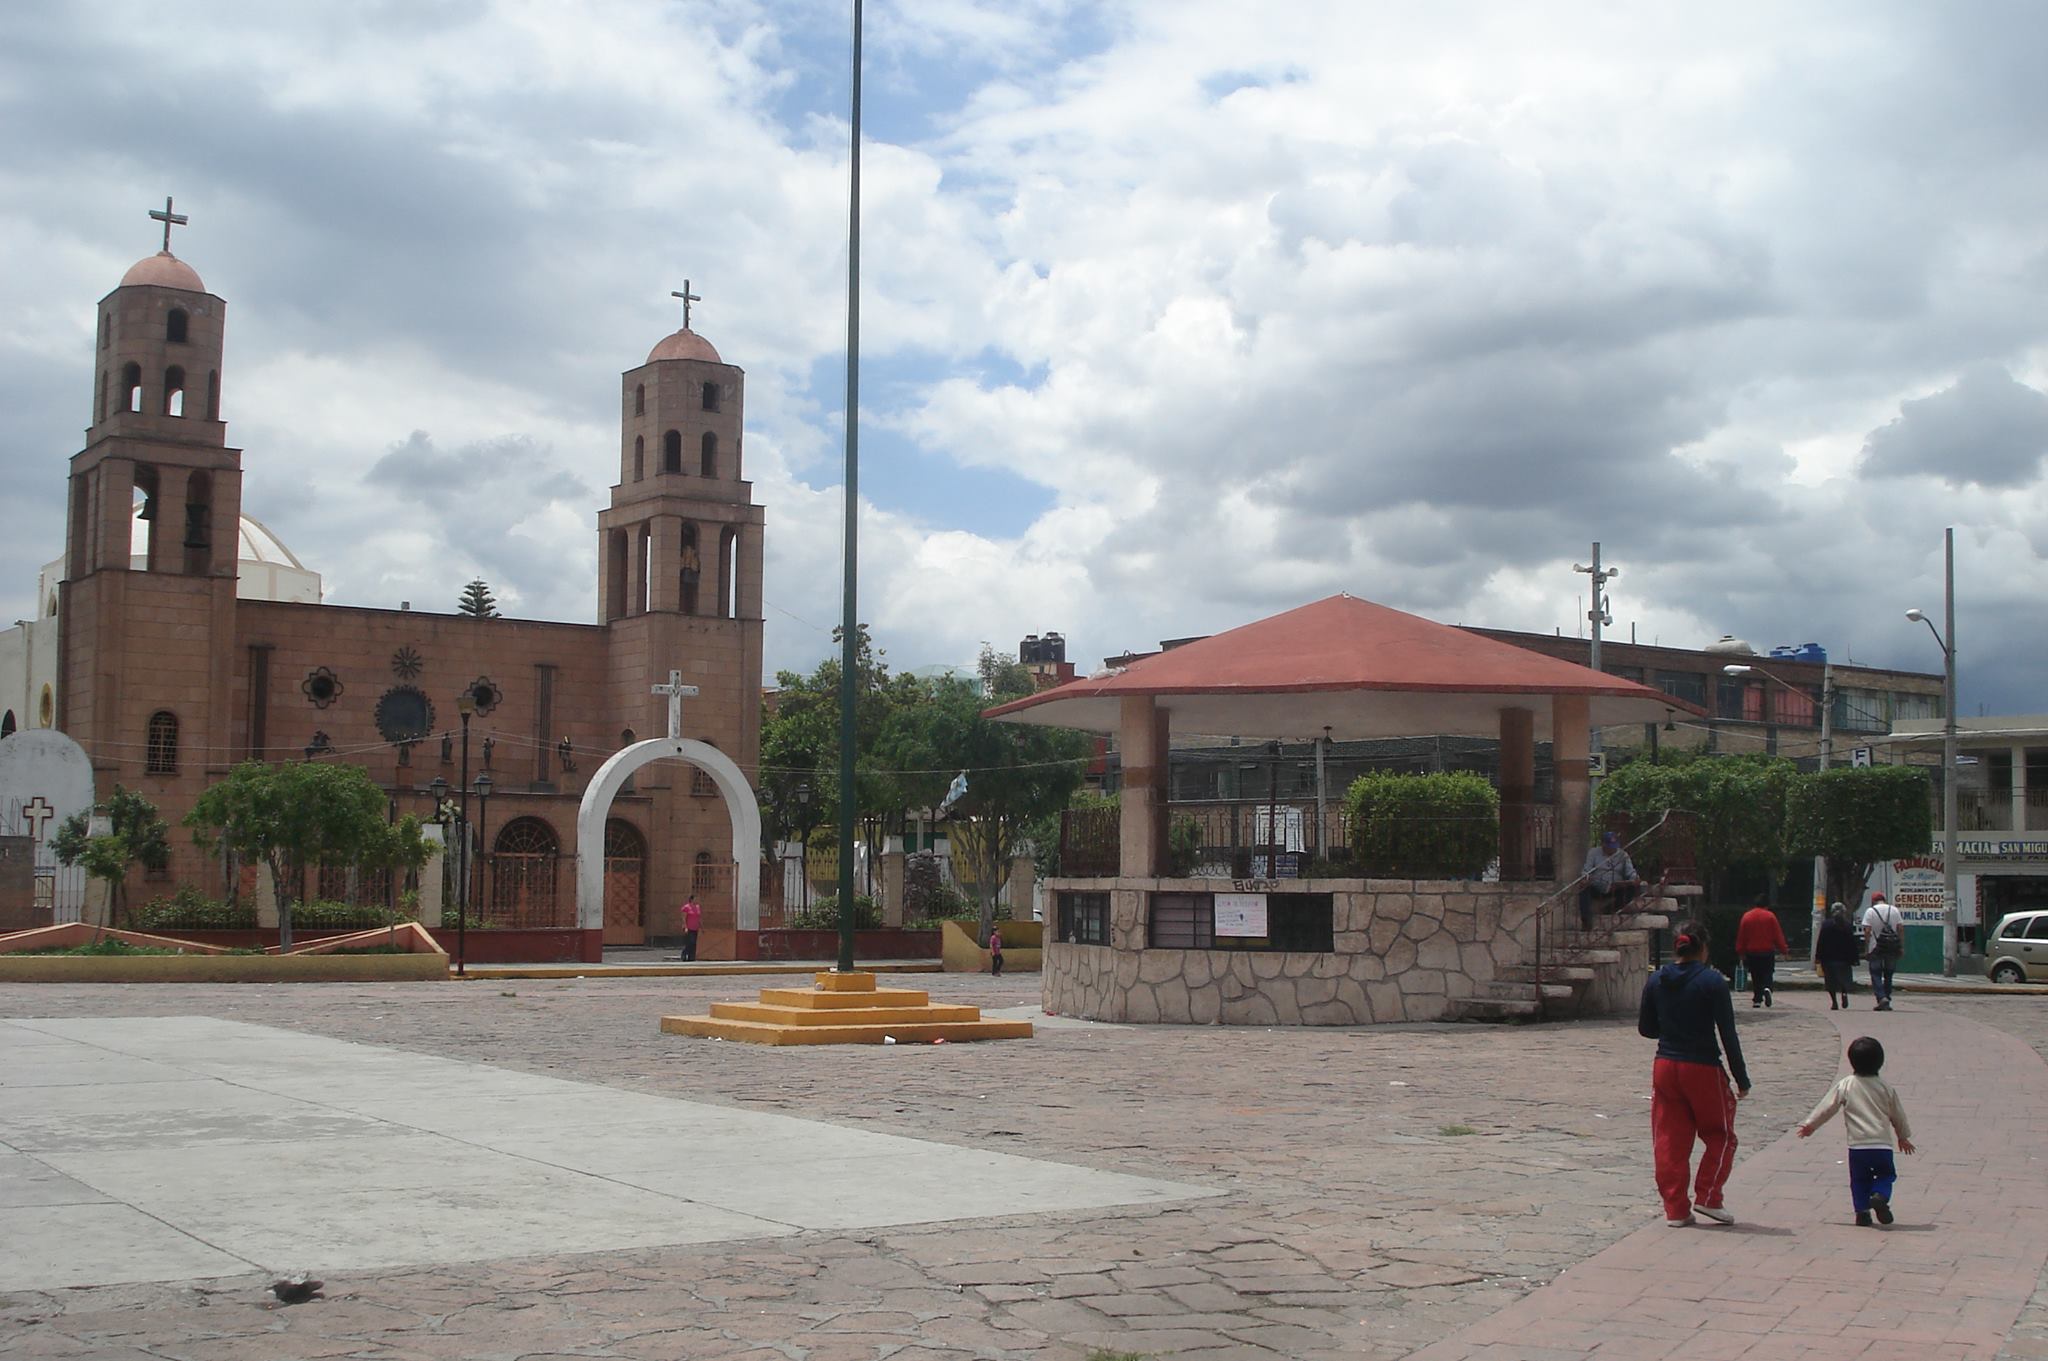 https://mexicocity.cdmx.gob.mx/wp-content/uploads/2022/12/Pueblo-San-Juan-de-Arag%C3%B3n.jpg